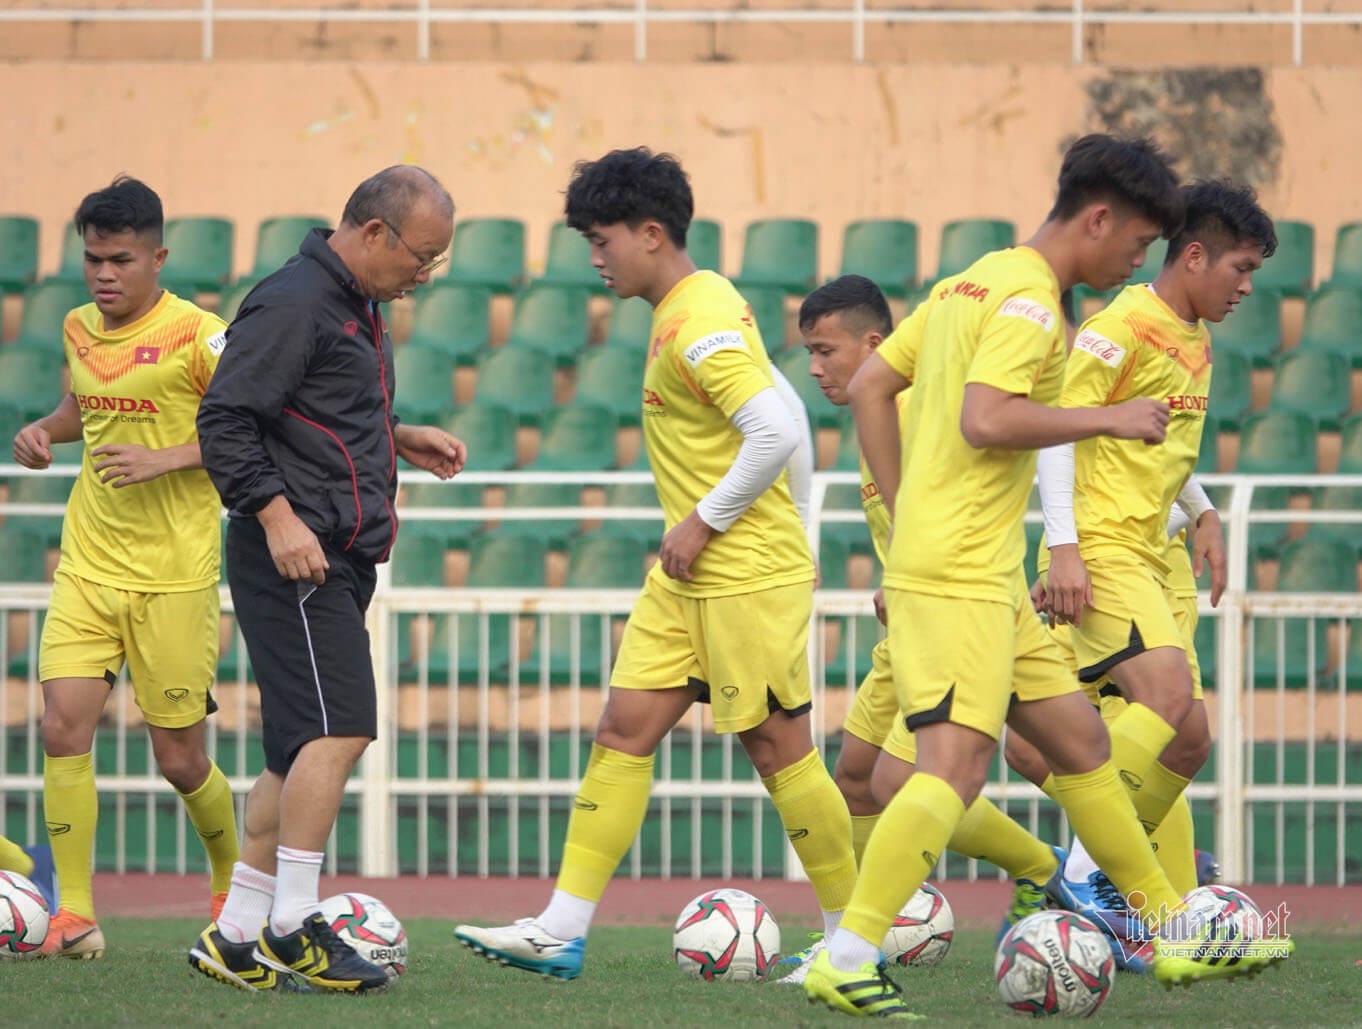 Trả thù: Nước chủ nhà Thái Lan chọn sân tập đểu cho U23 Việt Nam